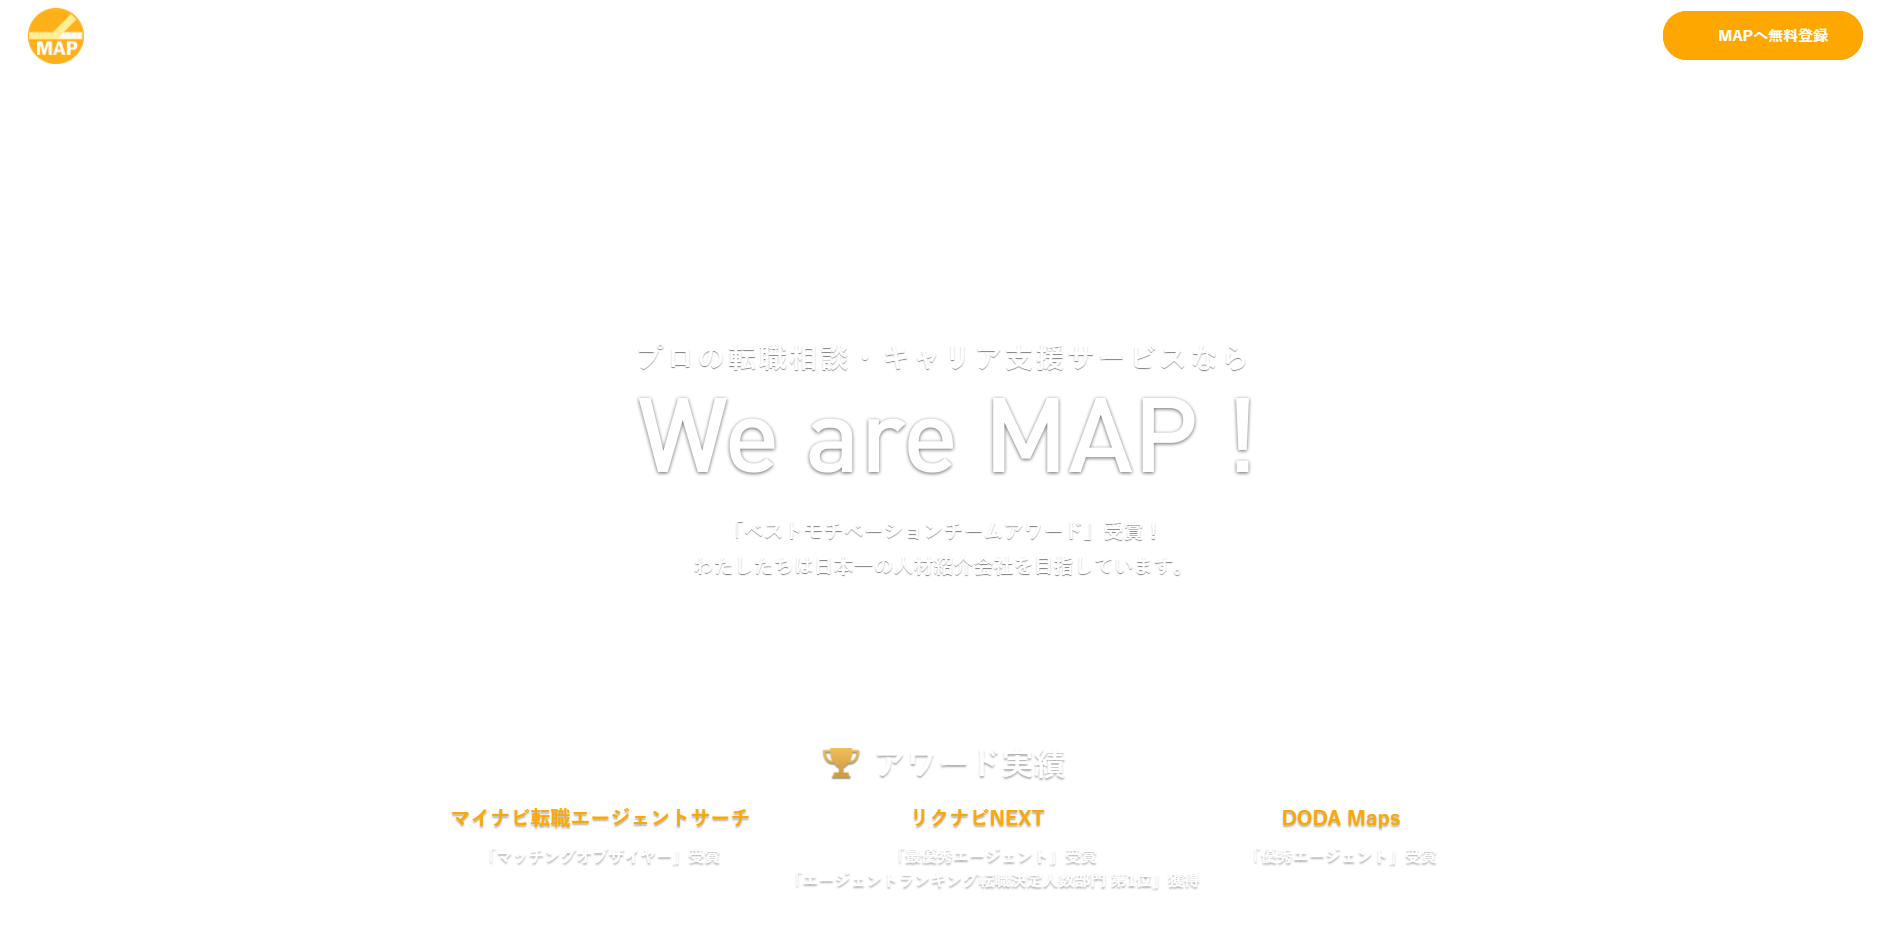 株式会社MAP